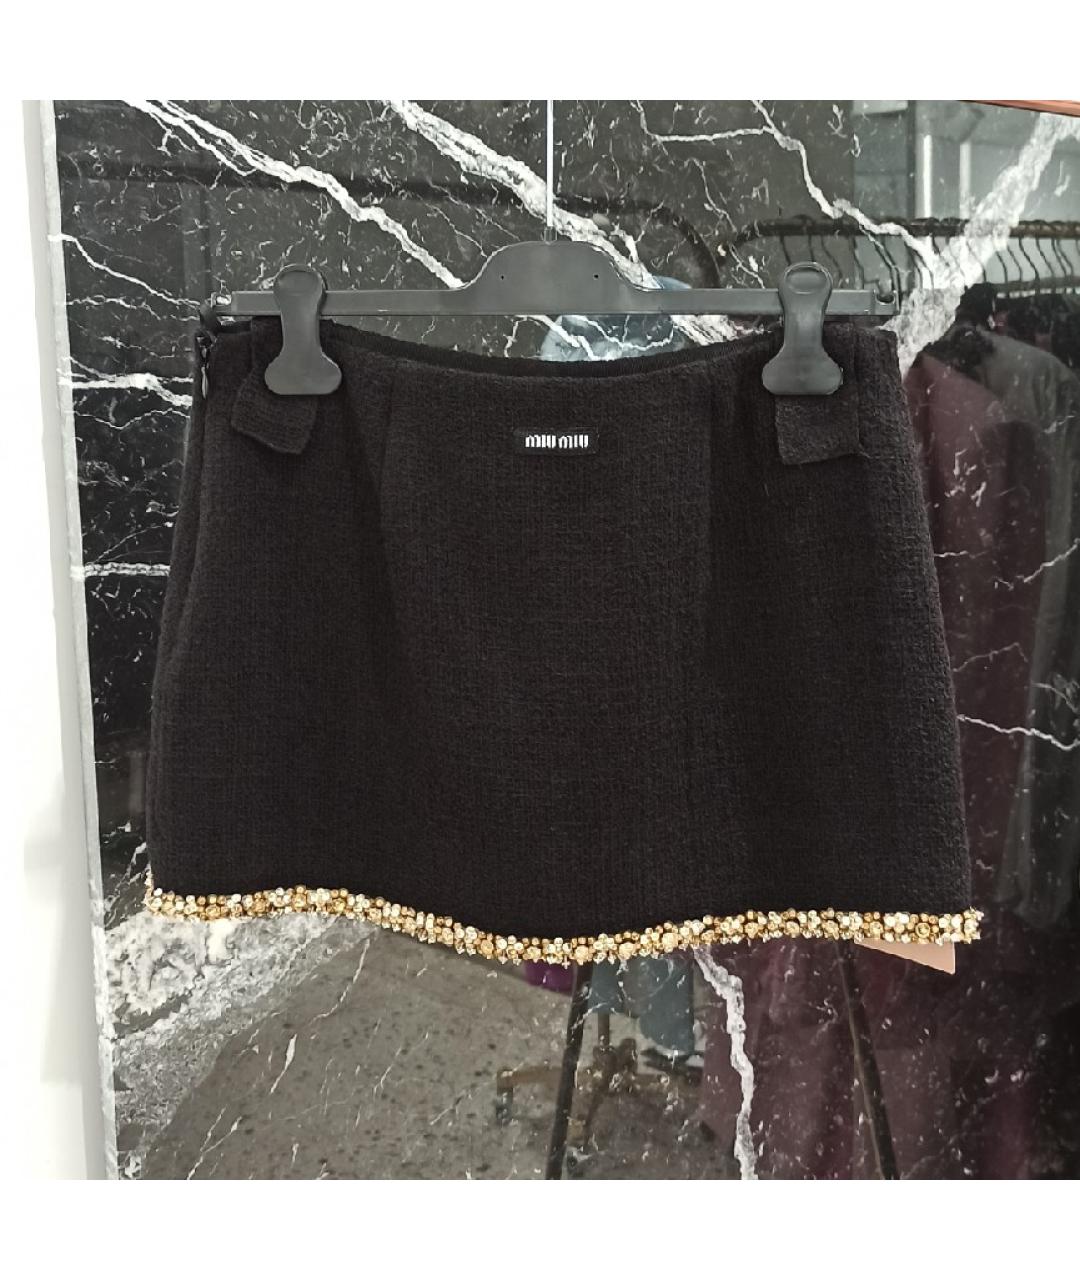 MIU MIU Черная шерстяная юбка мини, фото 2